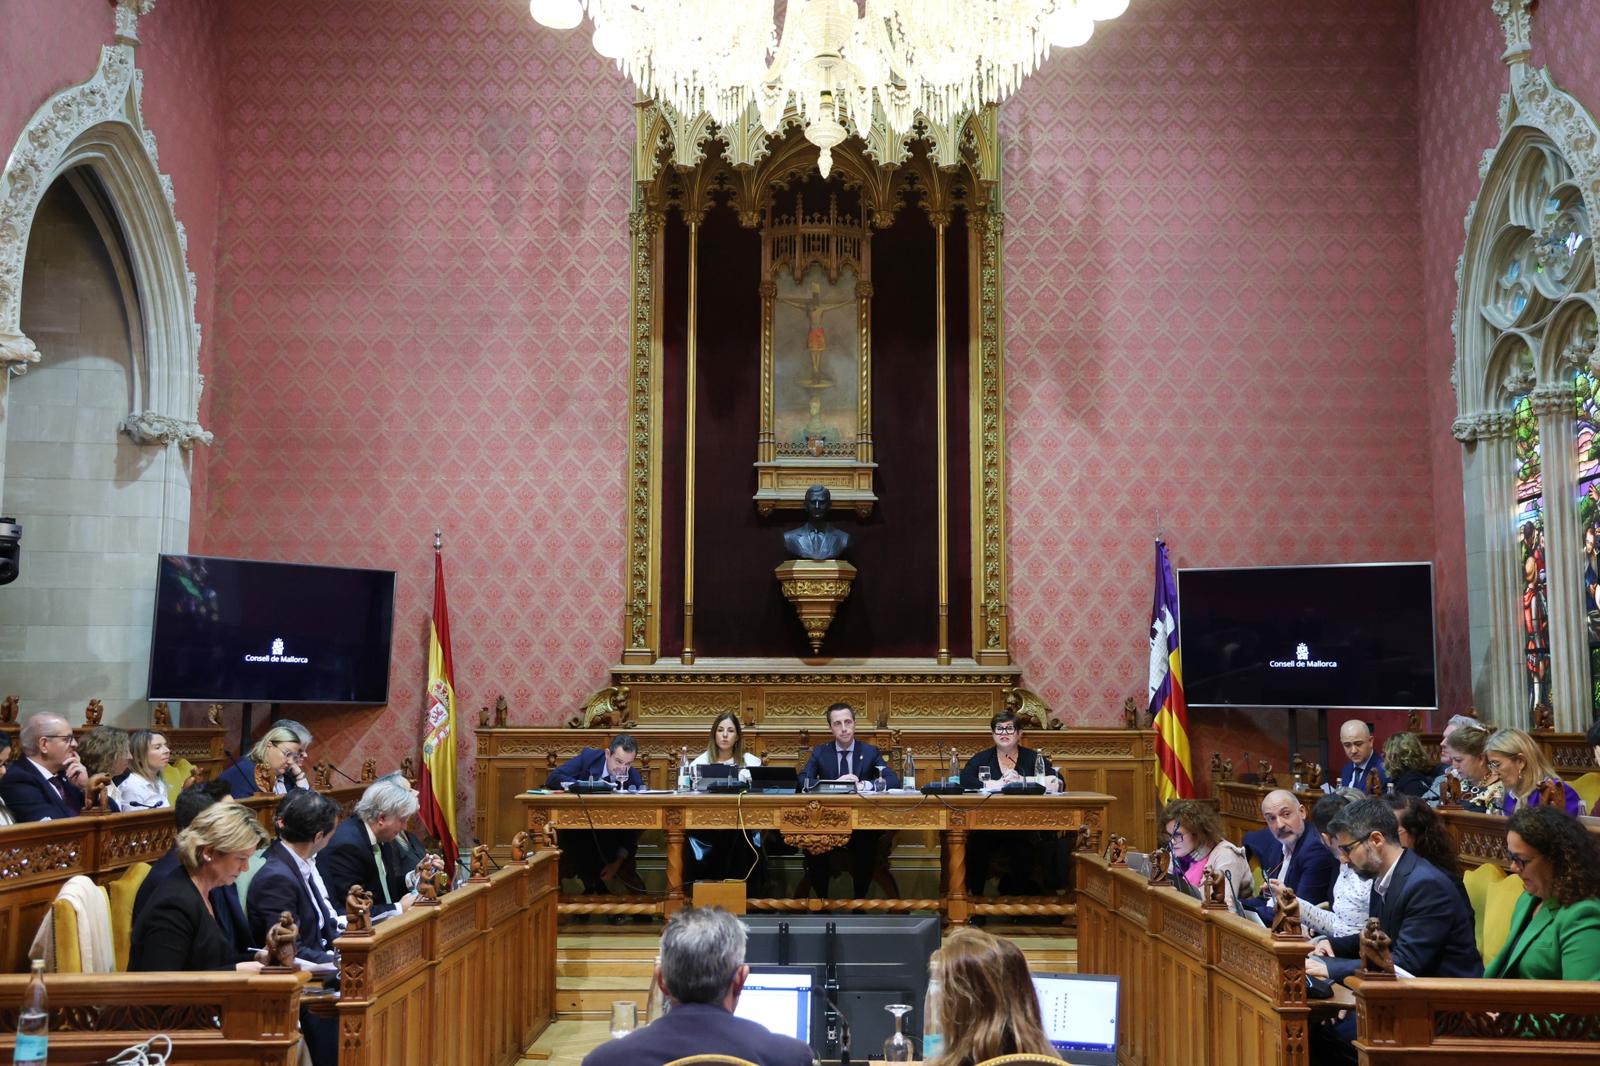 El Consell de Mallorca ha aprobado provisionalmente en el pleno ordinario el cambio de fecha de la Diada de Mallorca al 12 de septiembre